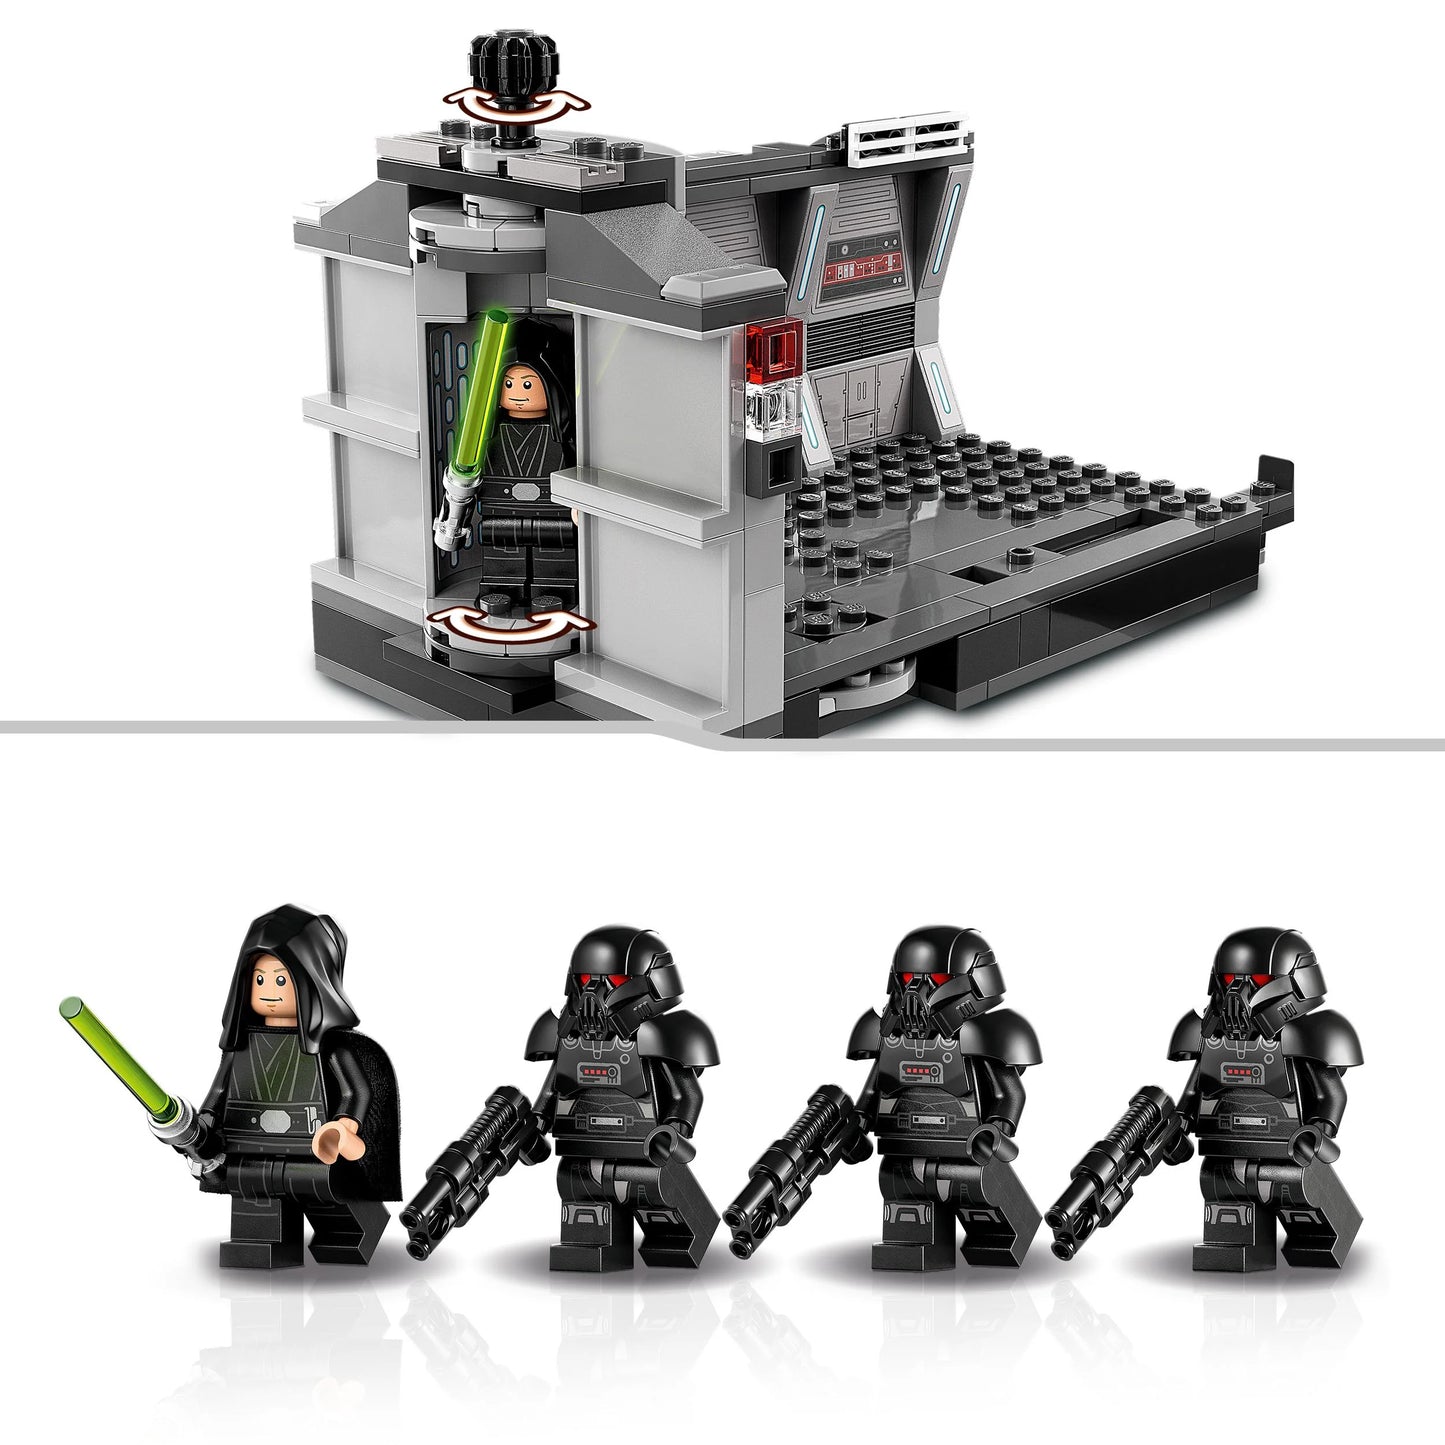 Dark Trooper Attack - LEGO Star Wars